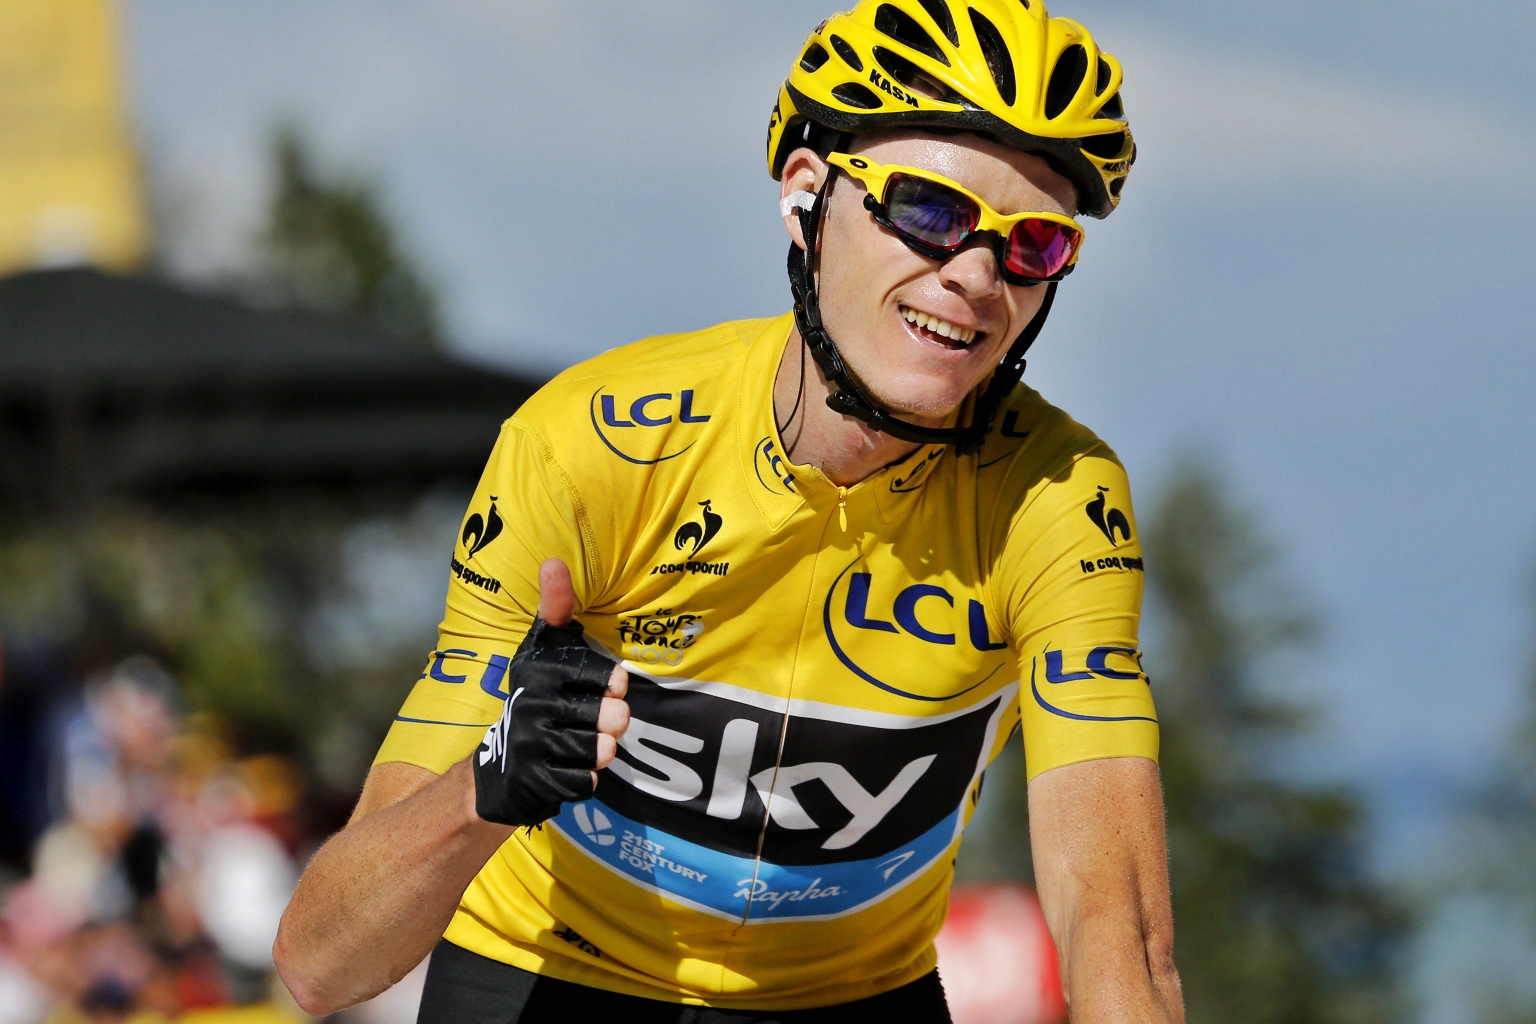 Giro d’Italia, sullo Zoncolan trionfa Froome. Yates resta in rosa